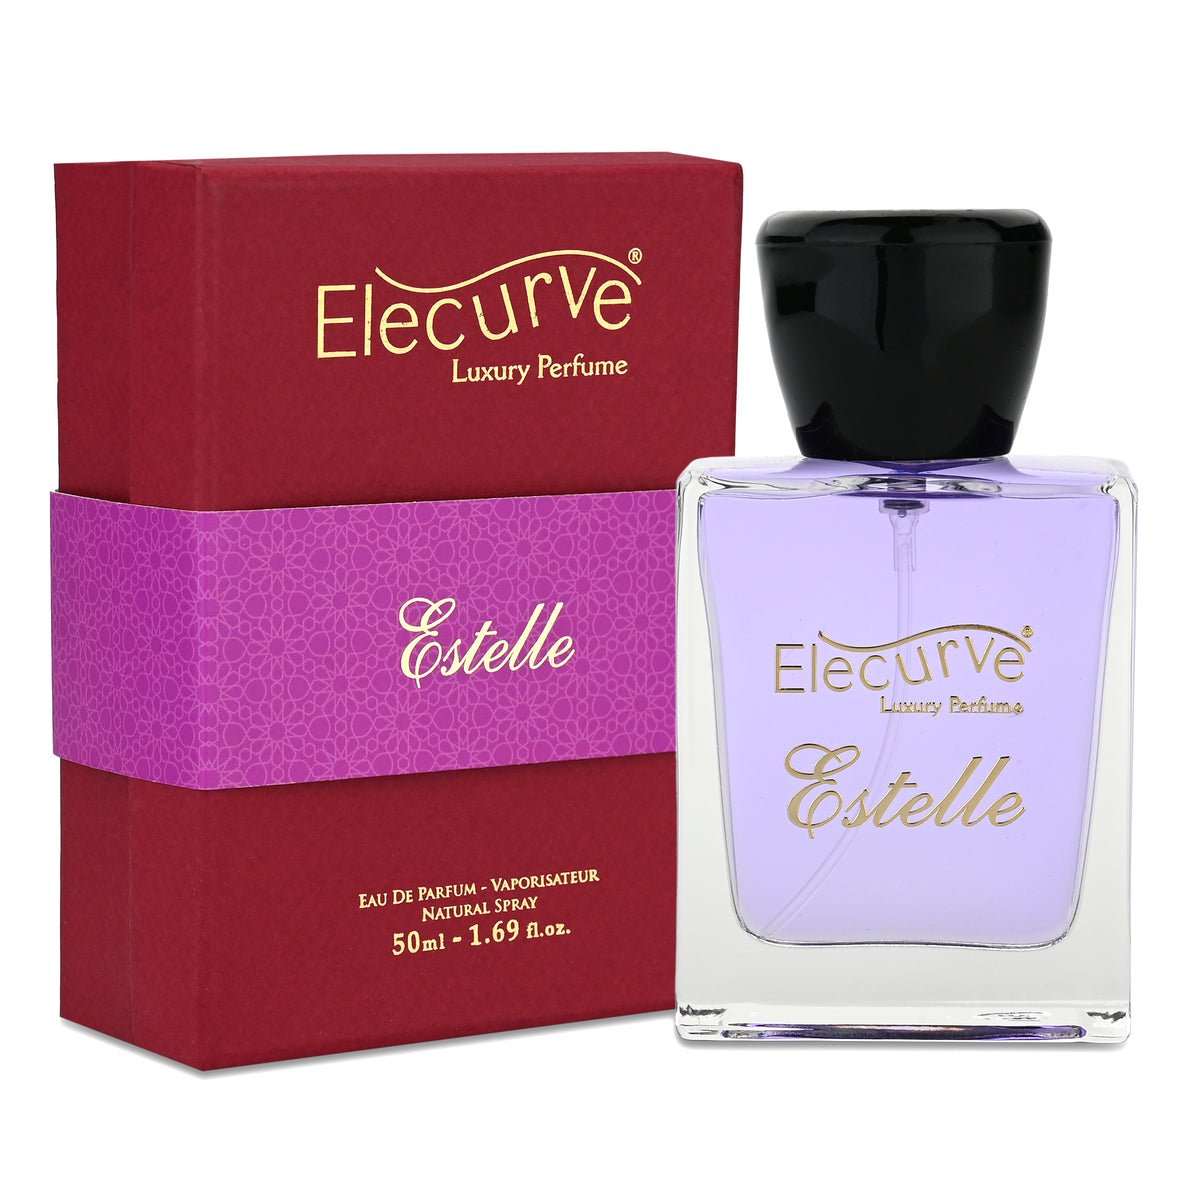 Elecurve Estelle Eau De Parfum 50ml | Luxury Perfume | Long Lasting Fragrance For Women